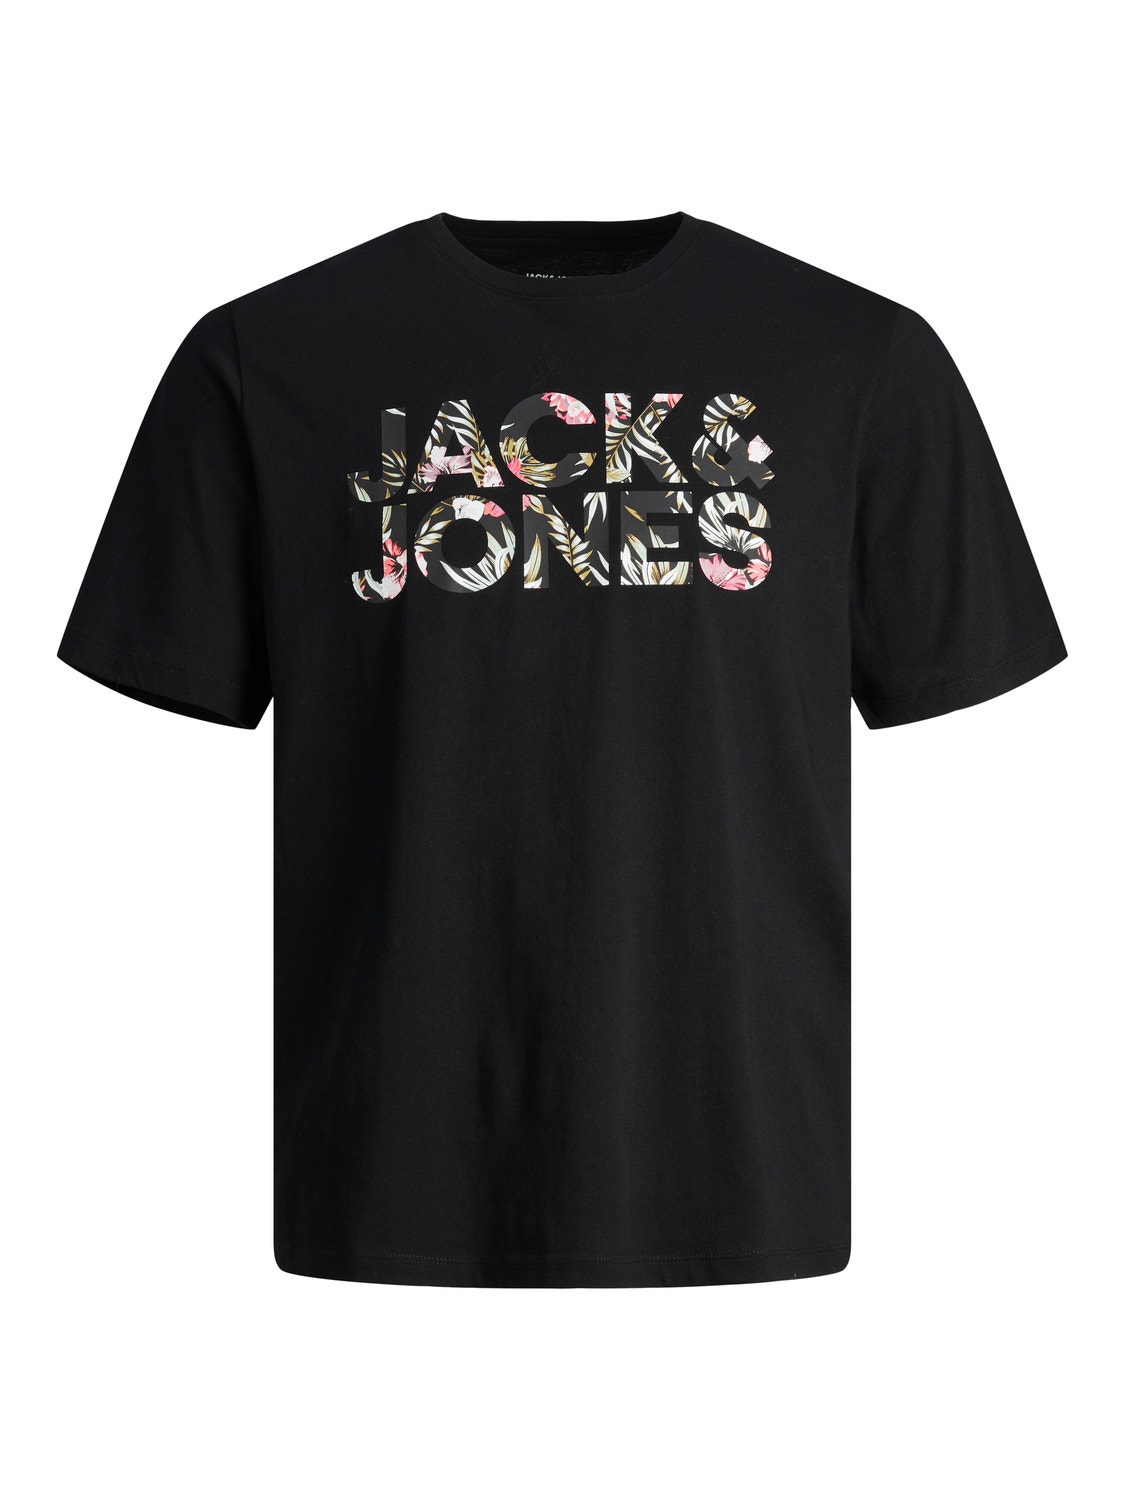 Jack & Jones T-shirt Logo Col rond -Carbon - 12250683